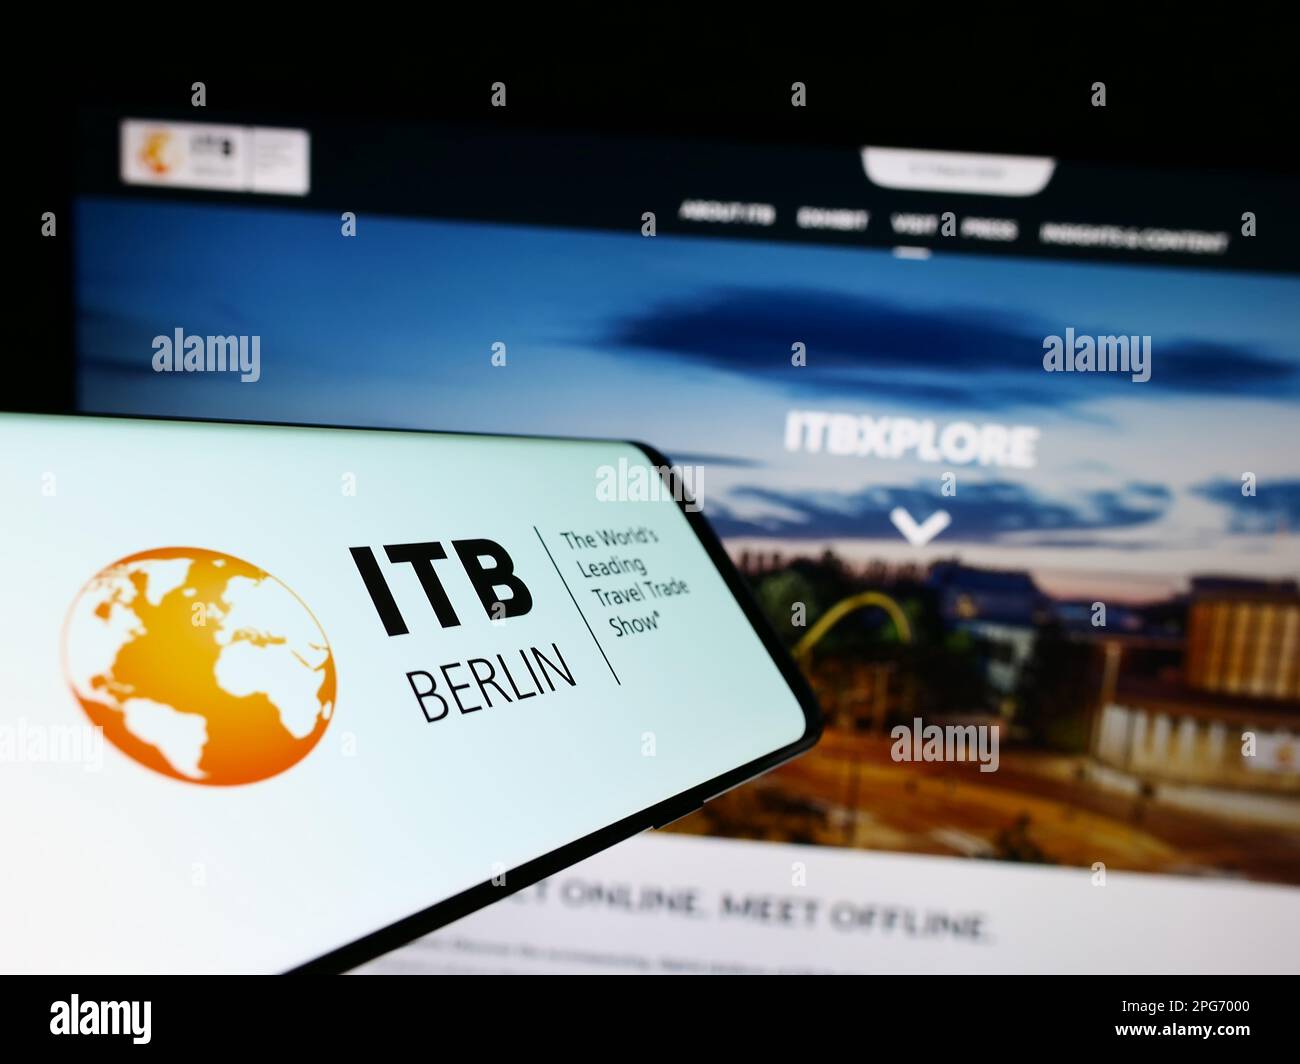 Smartphone con logo della fiera turistica tedesca ITB Berlin sullo schermo di fronte al sito web. Messa a fuoco al centro del display del telefono. Foto Stock